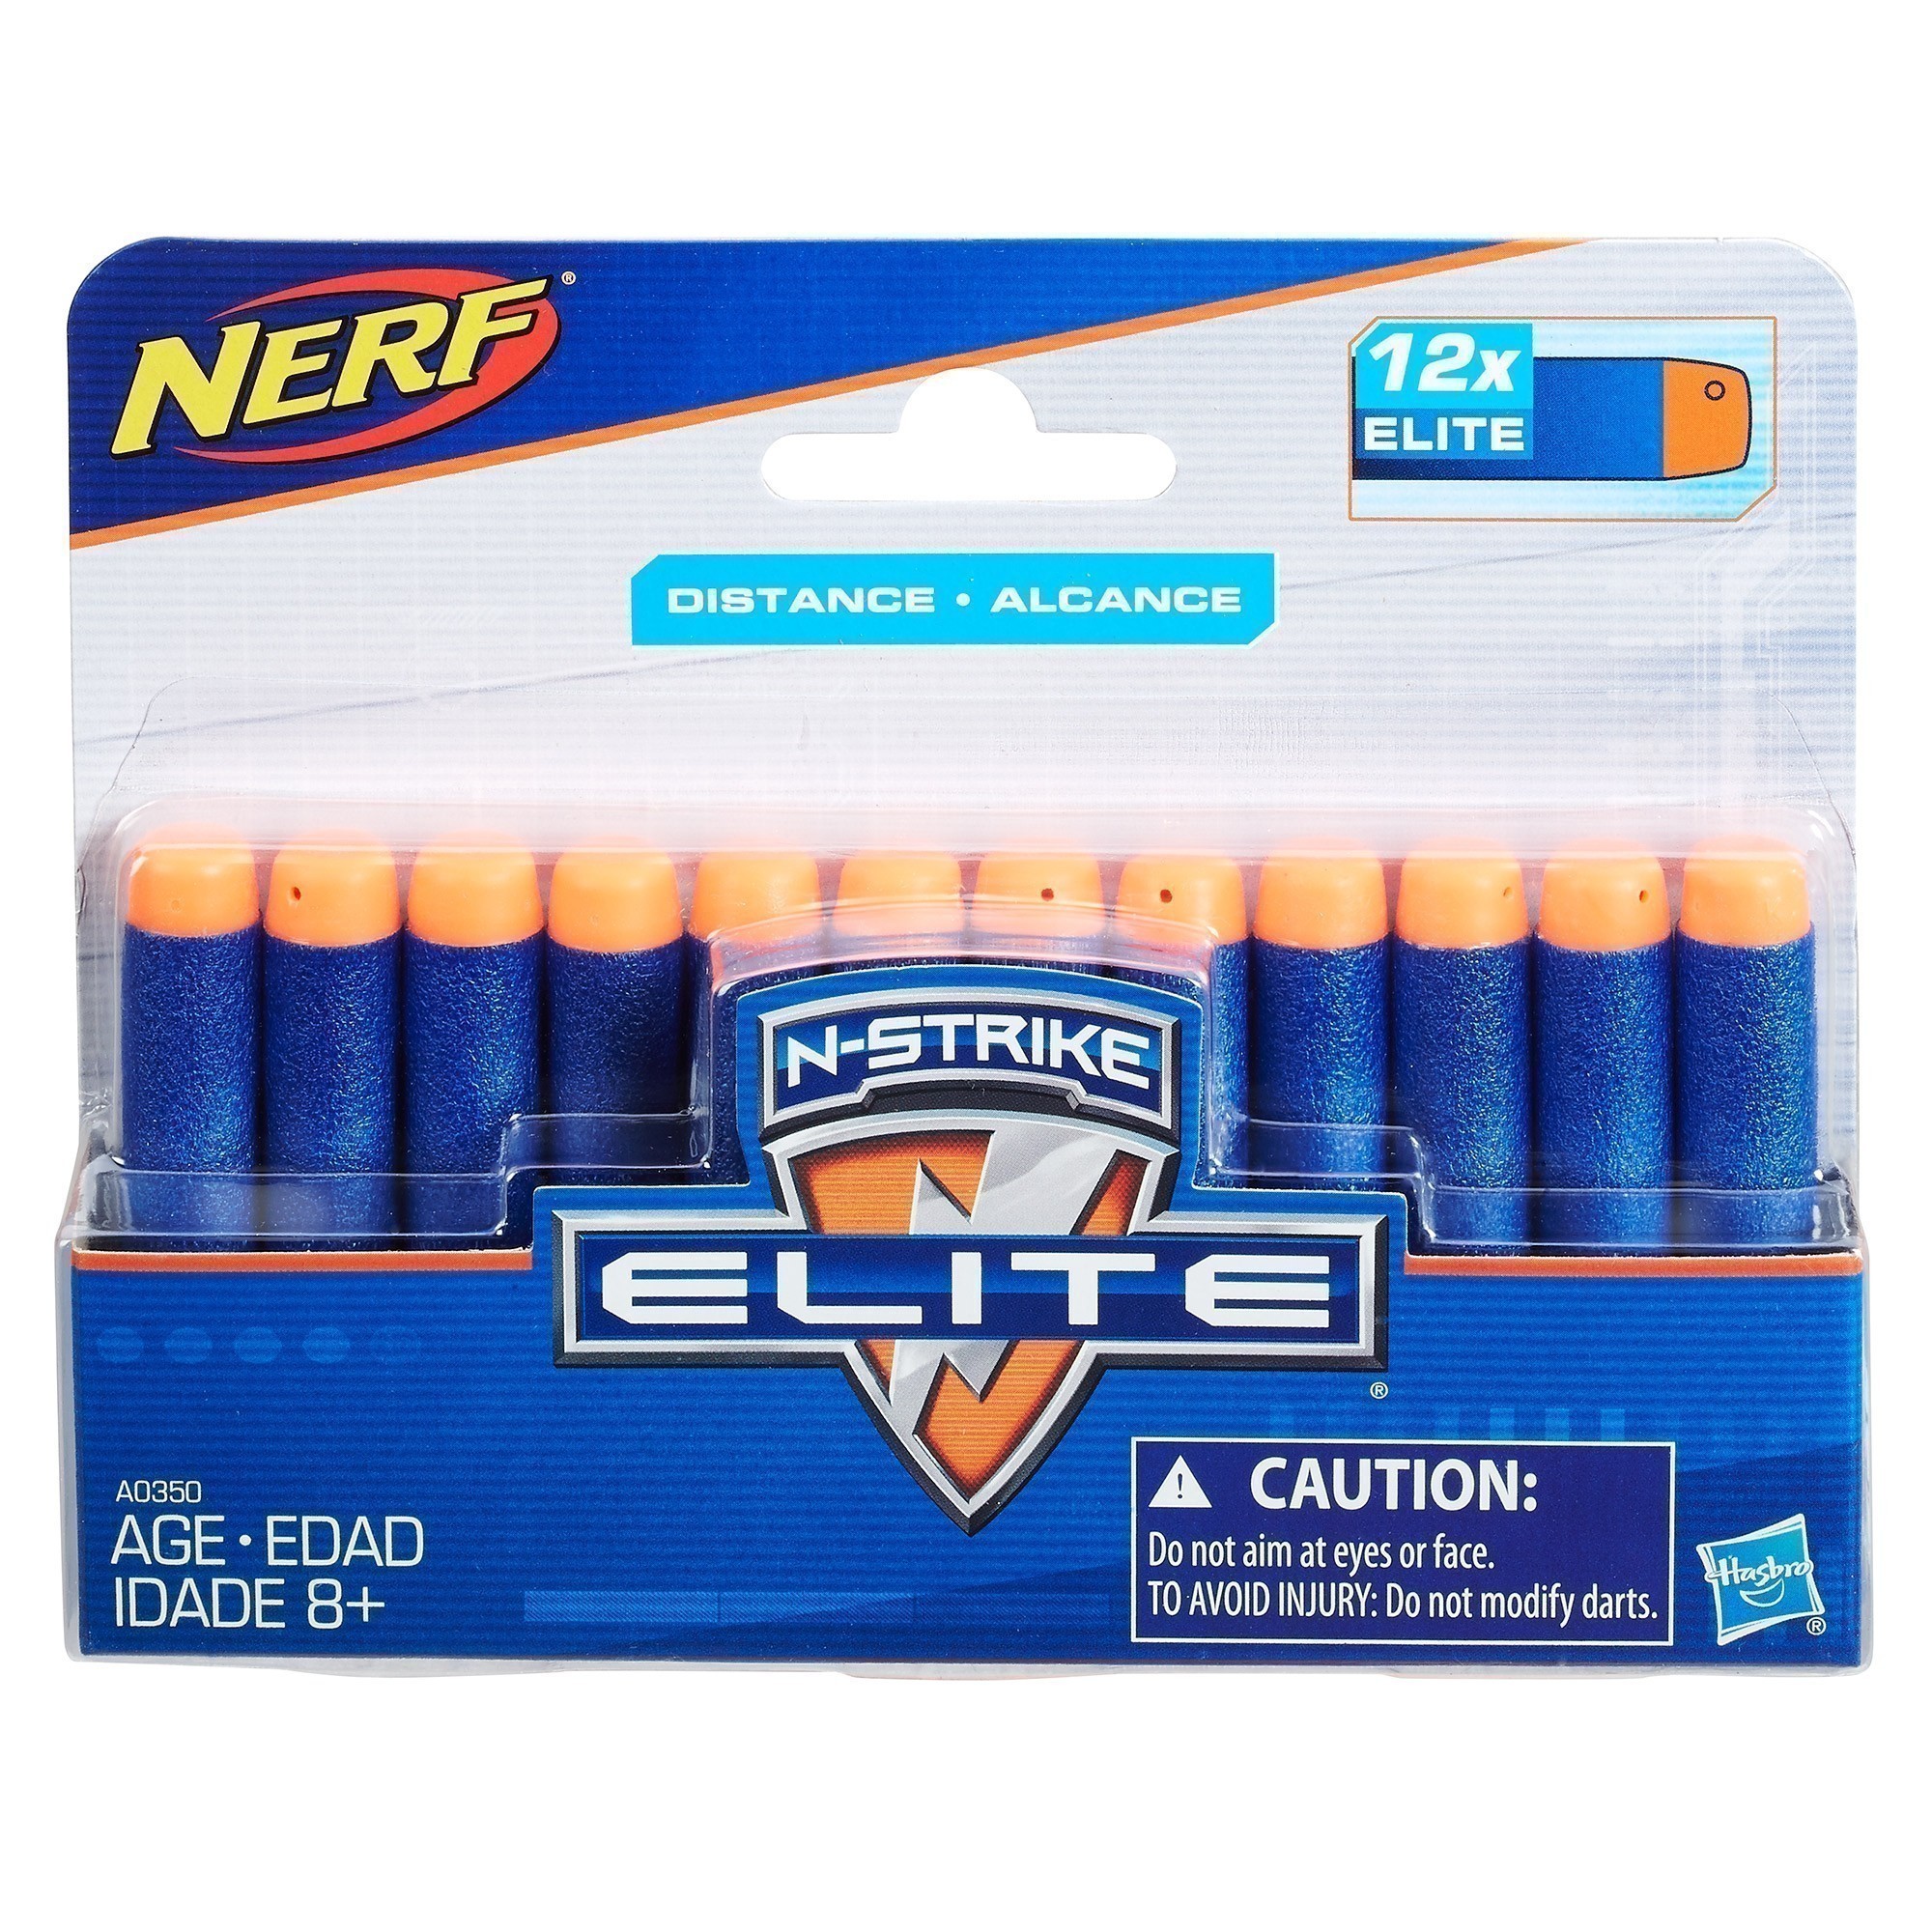 Nerf - N-Strike Elite Darts - 12 Pack Refill